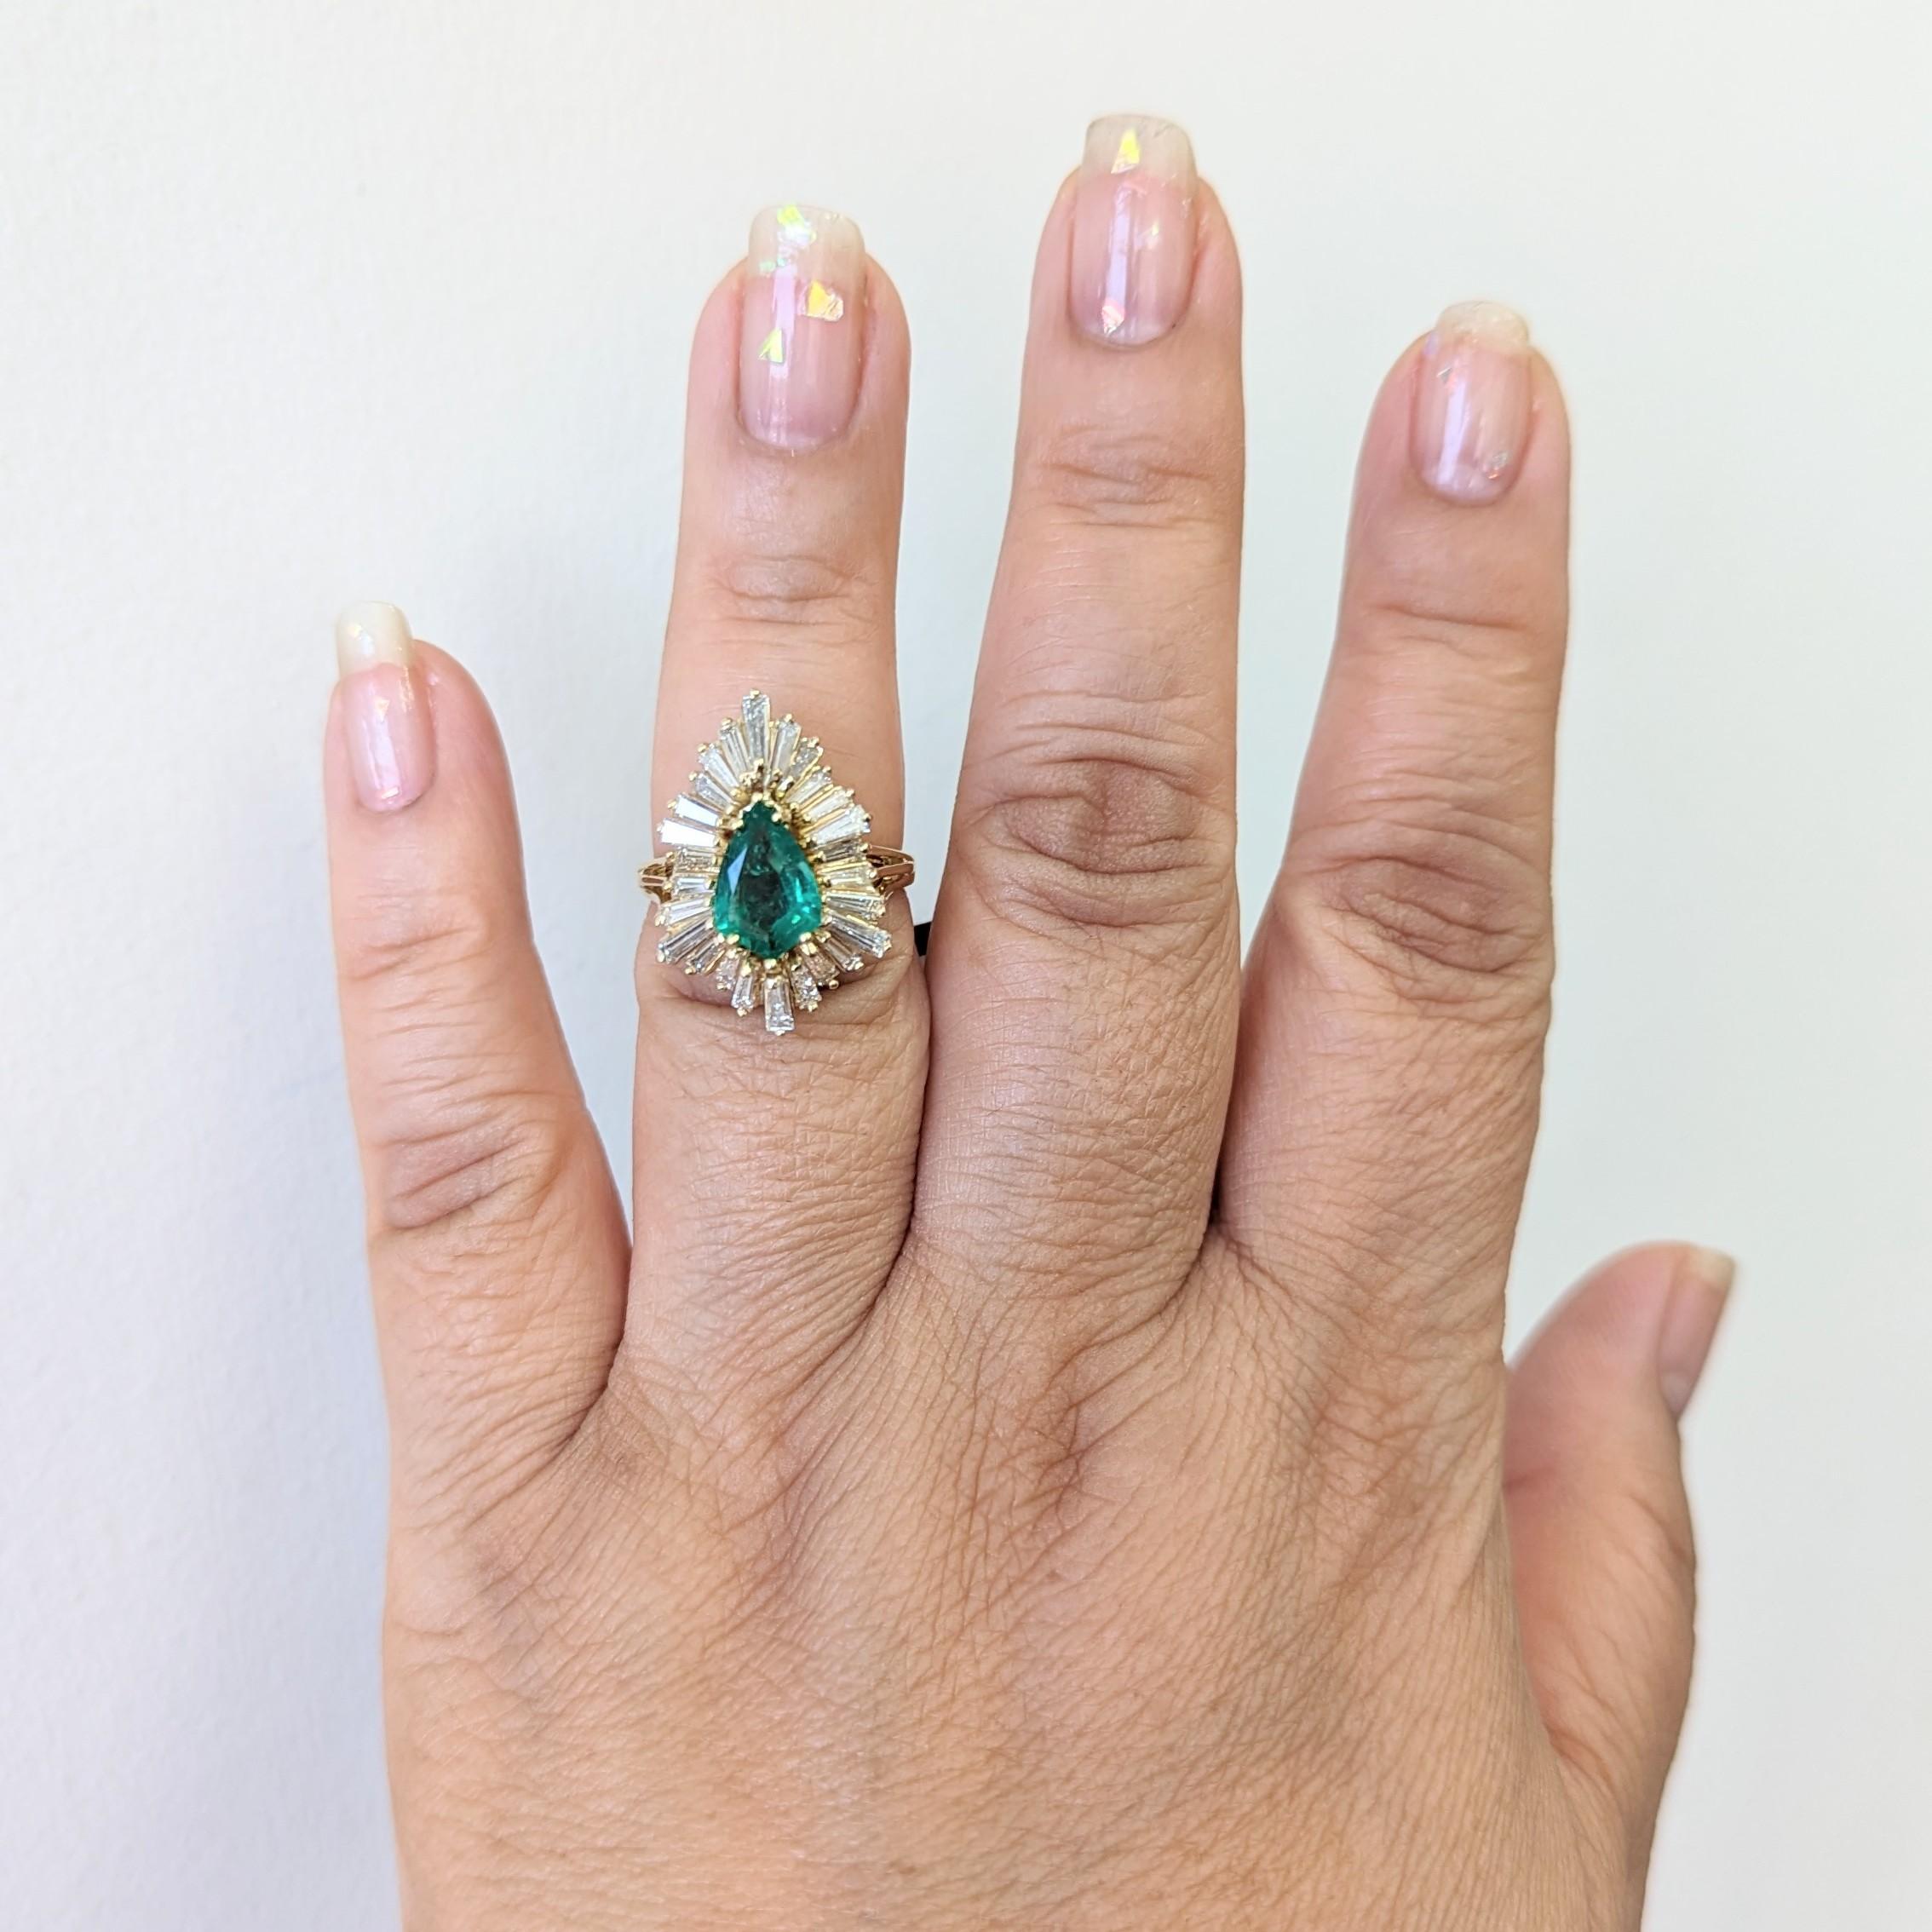 Wunderschöner 1,38-karätiger Smaragd in Birnenform mit weißen Diamantbaguetten von guter Qualität.  Handgefertigt in 18k Gelbgold.  Ring Größe 5.